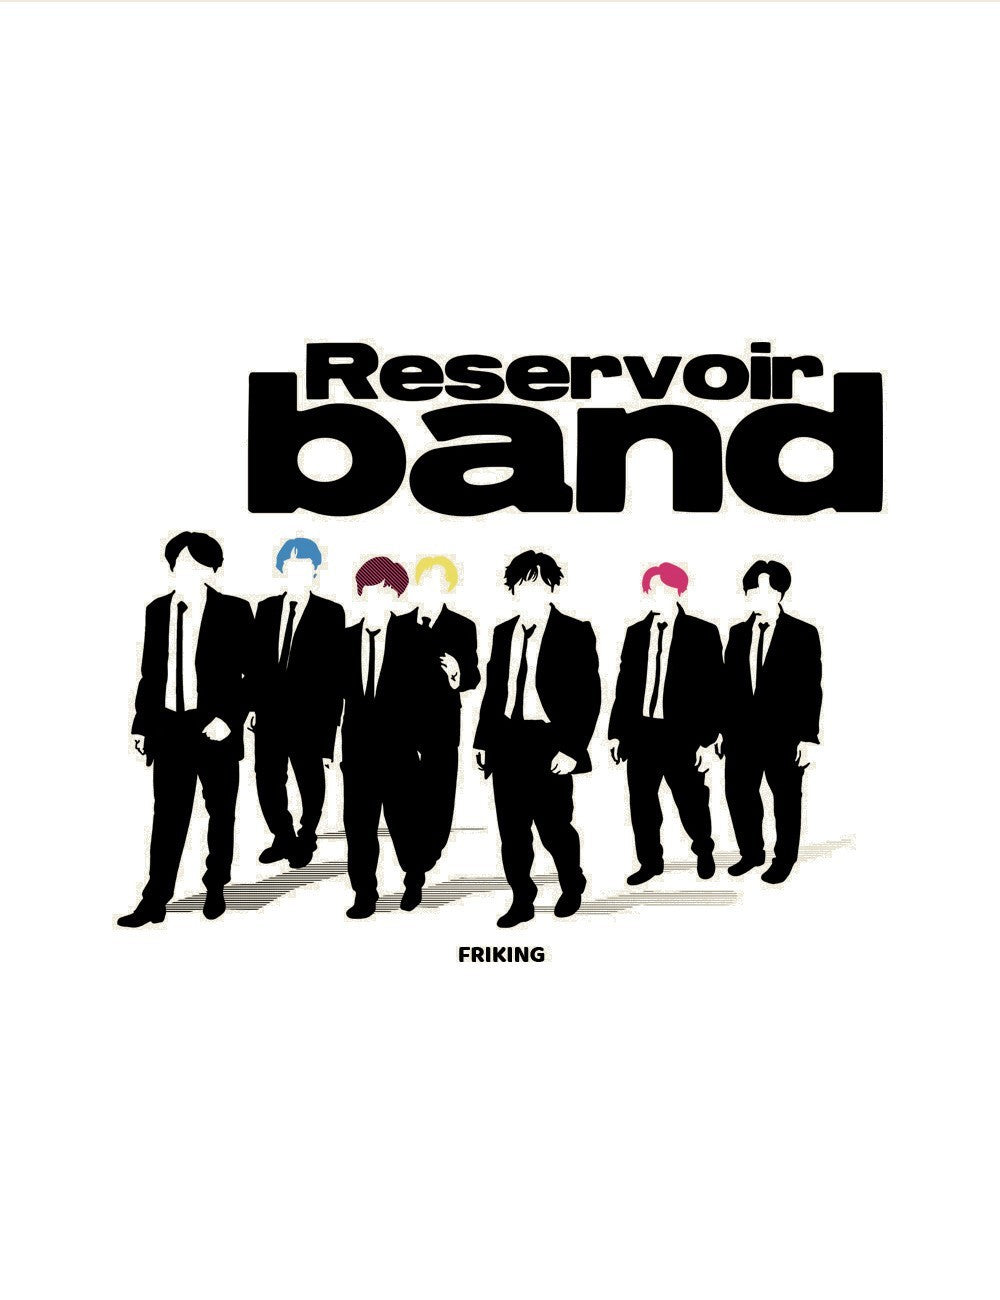  Reservoir band 